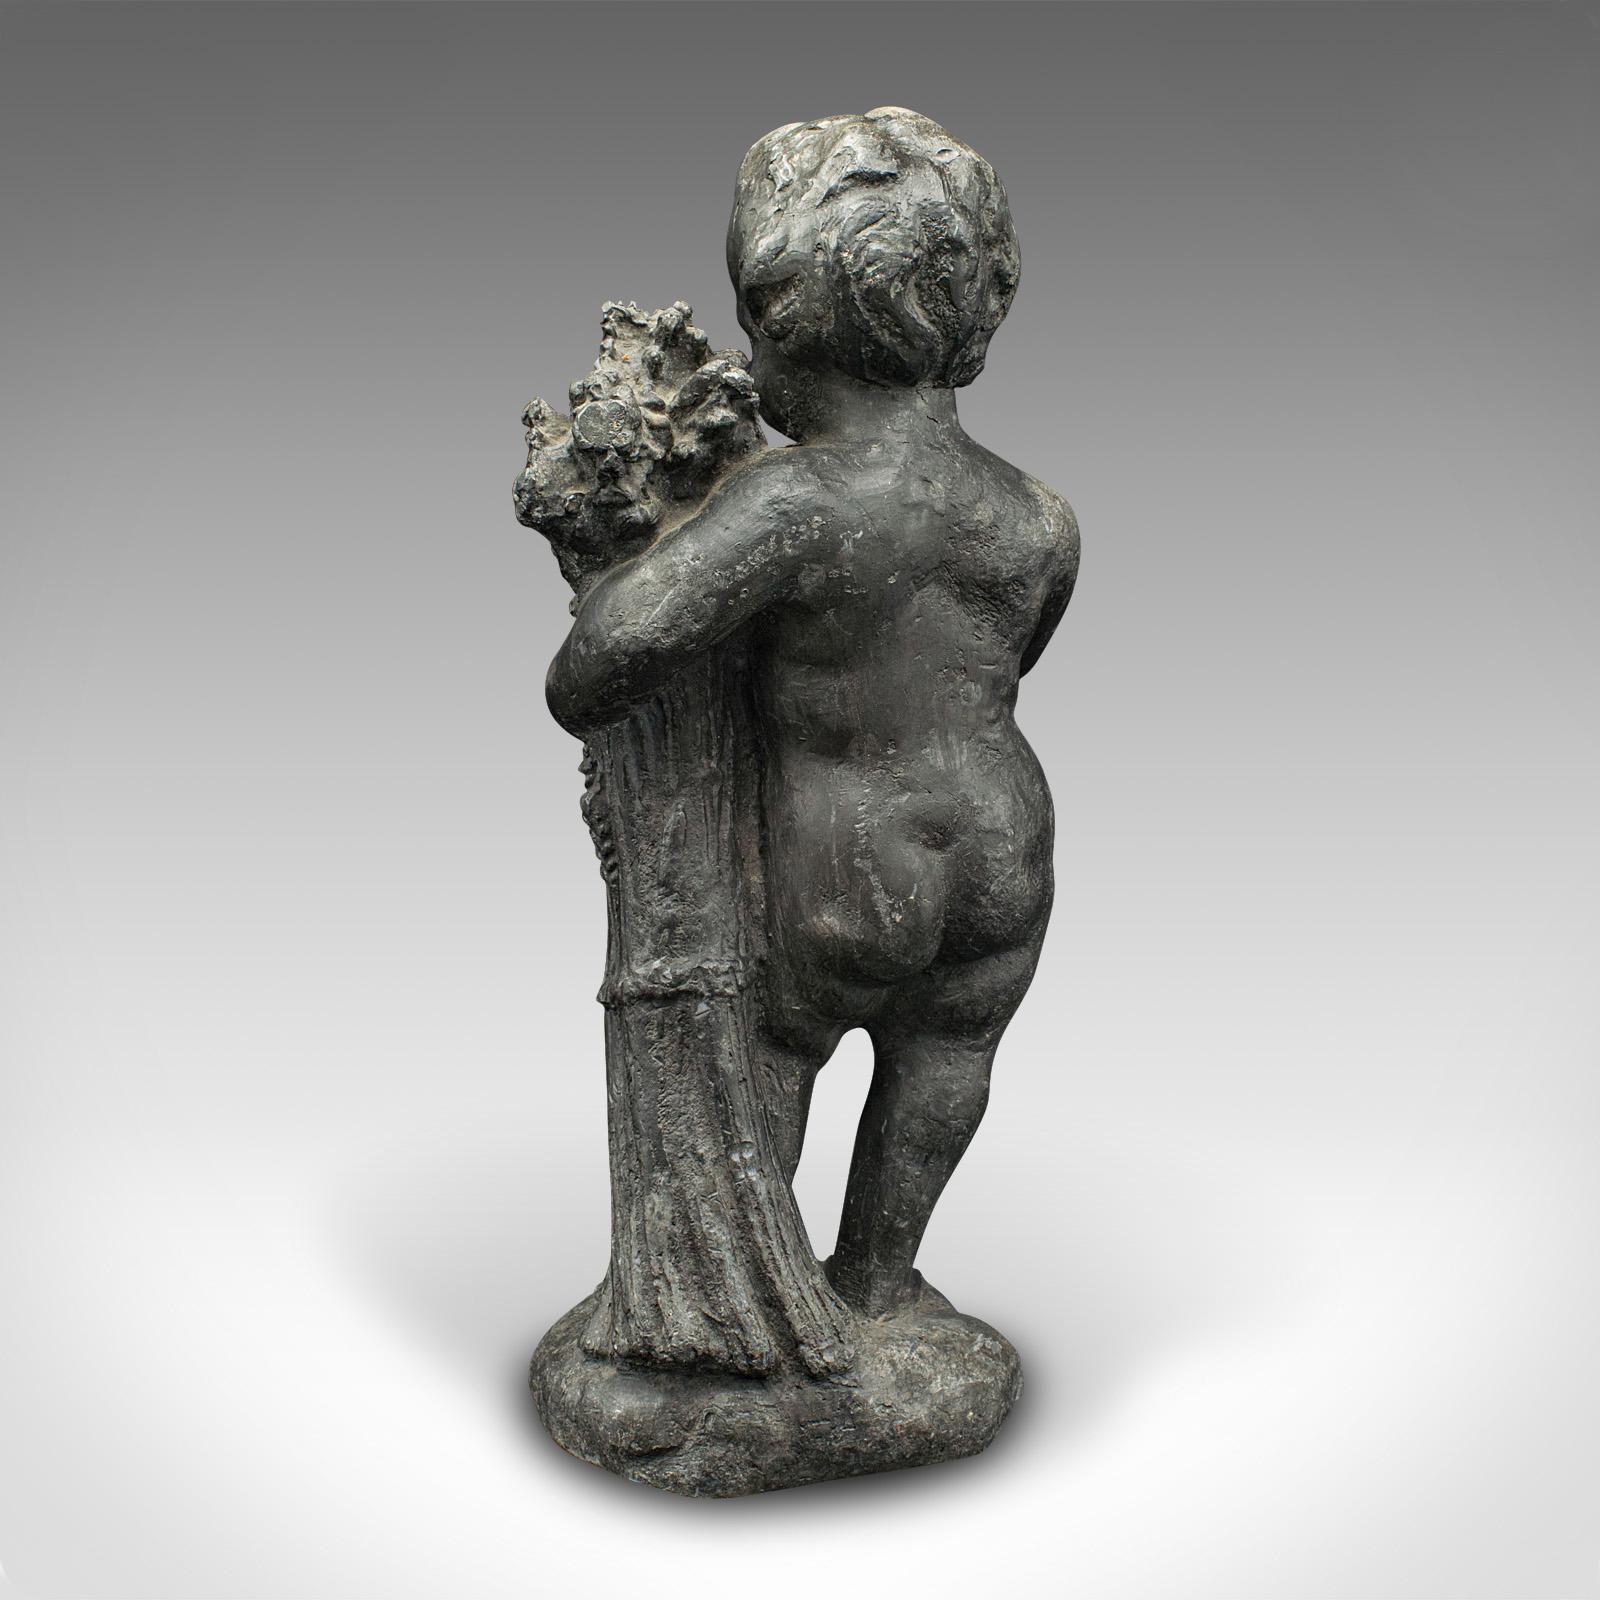 19th Century Heavy Antique Putto Figure, Italian, Lead Cherub Statue, Neoclassical, Victorian For Sale